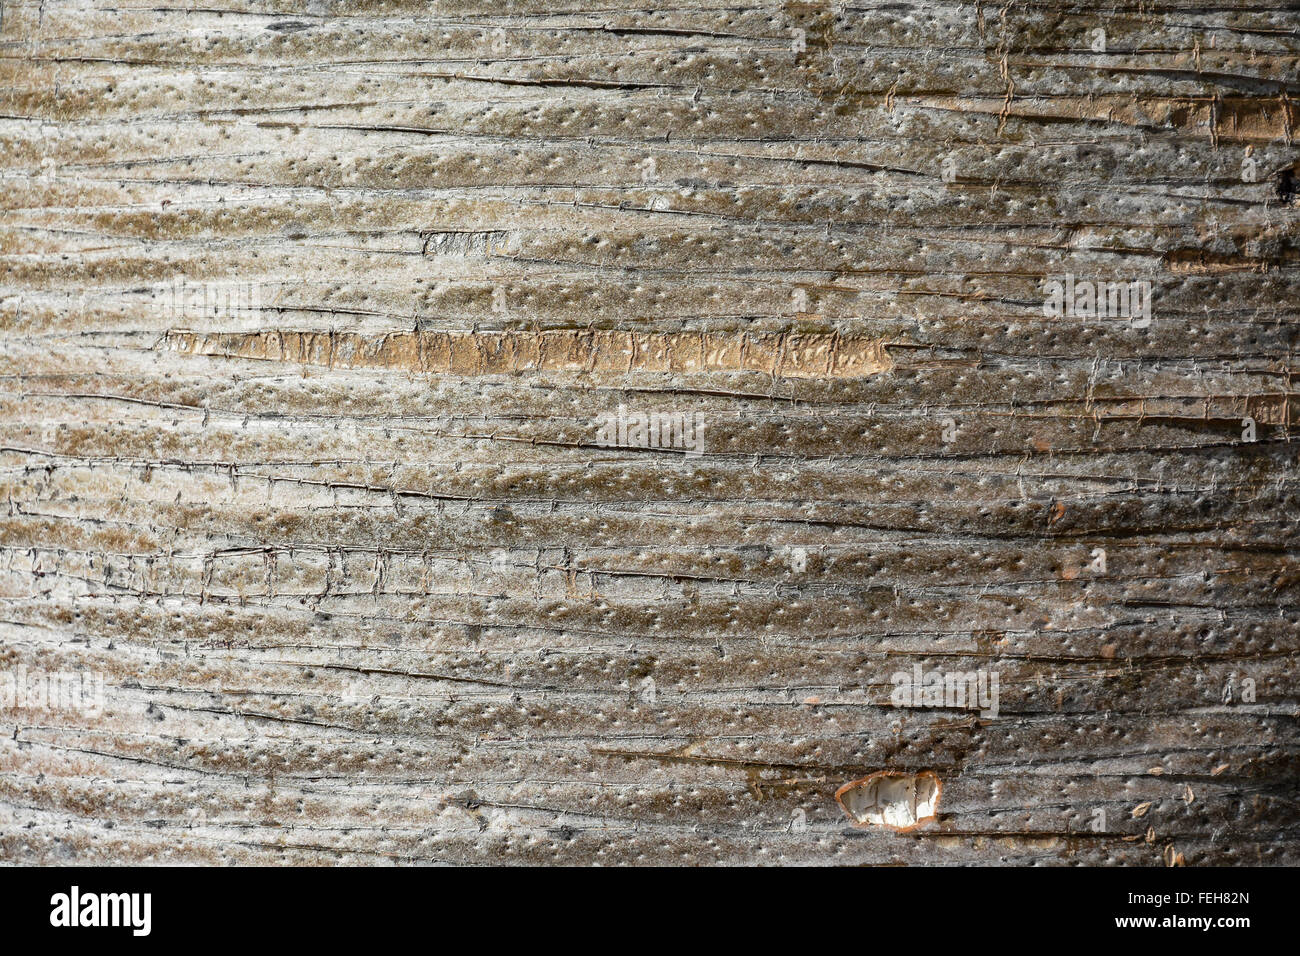 Ungewöhnliche Holz Textur, Muster, Hintergrund (Stamm von Dracaena Draco - Drachenbaum) Stockfoto